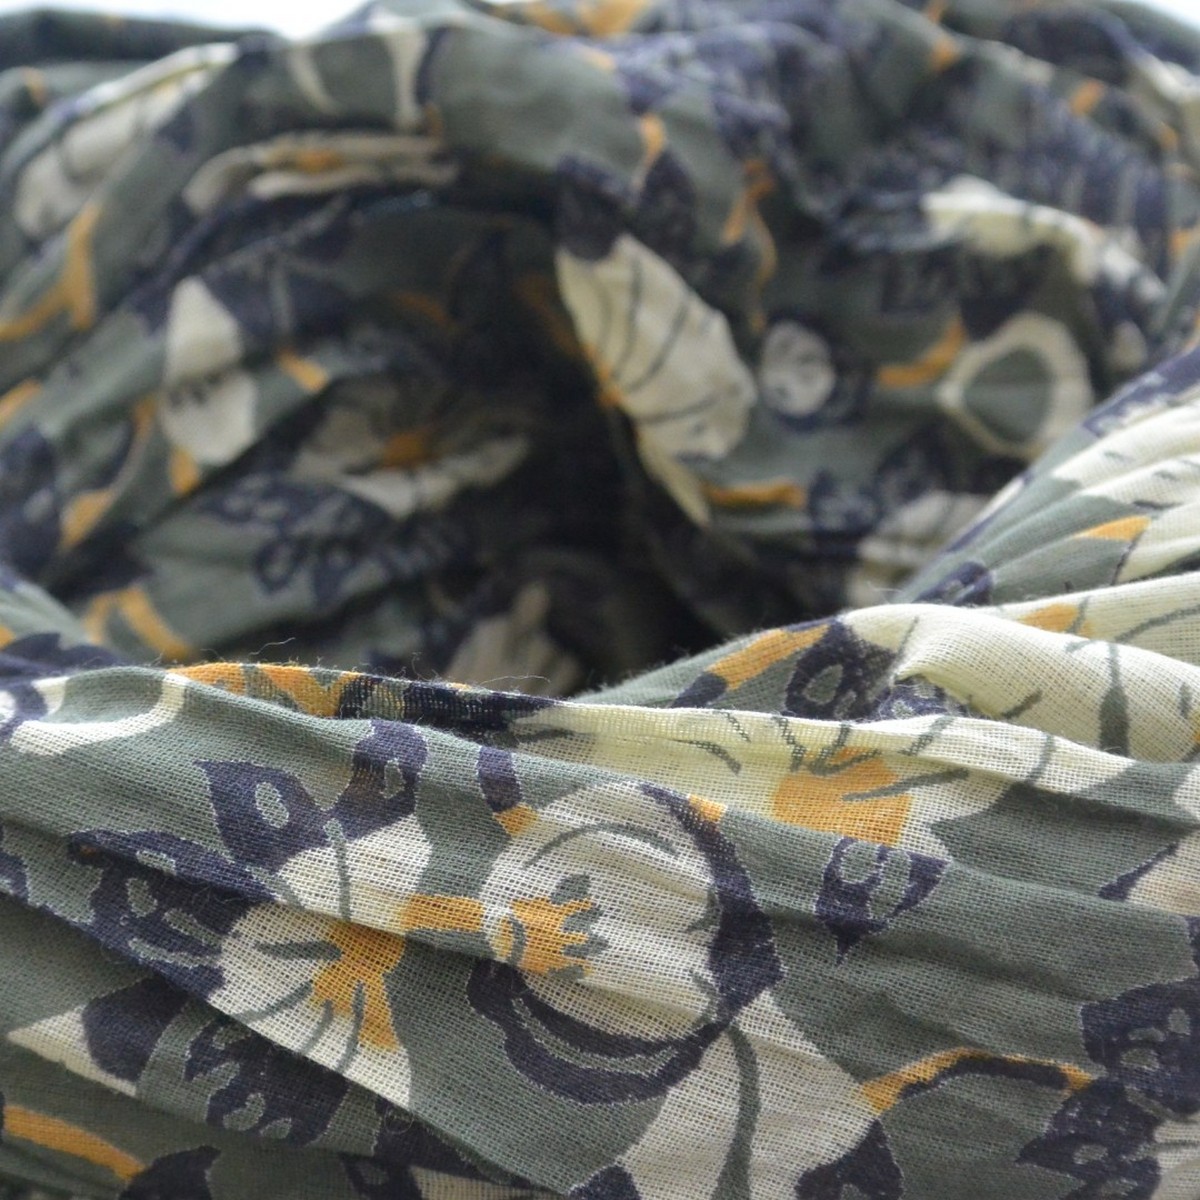 foulard zen ethic grande-etole-kyoto-voile-de-coton-110x180cm une idee cadeau chez ugo et lea   (2)